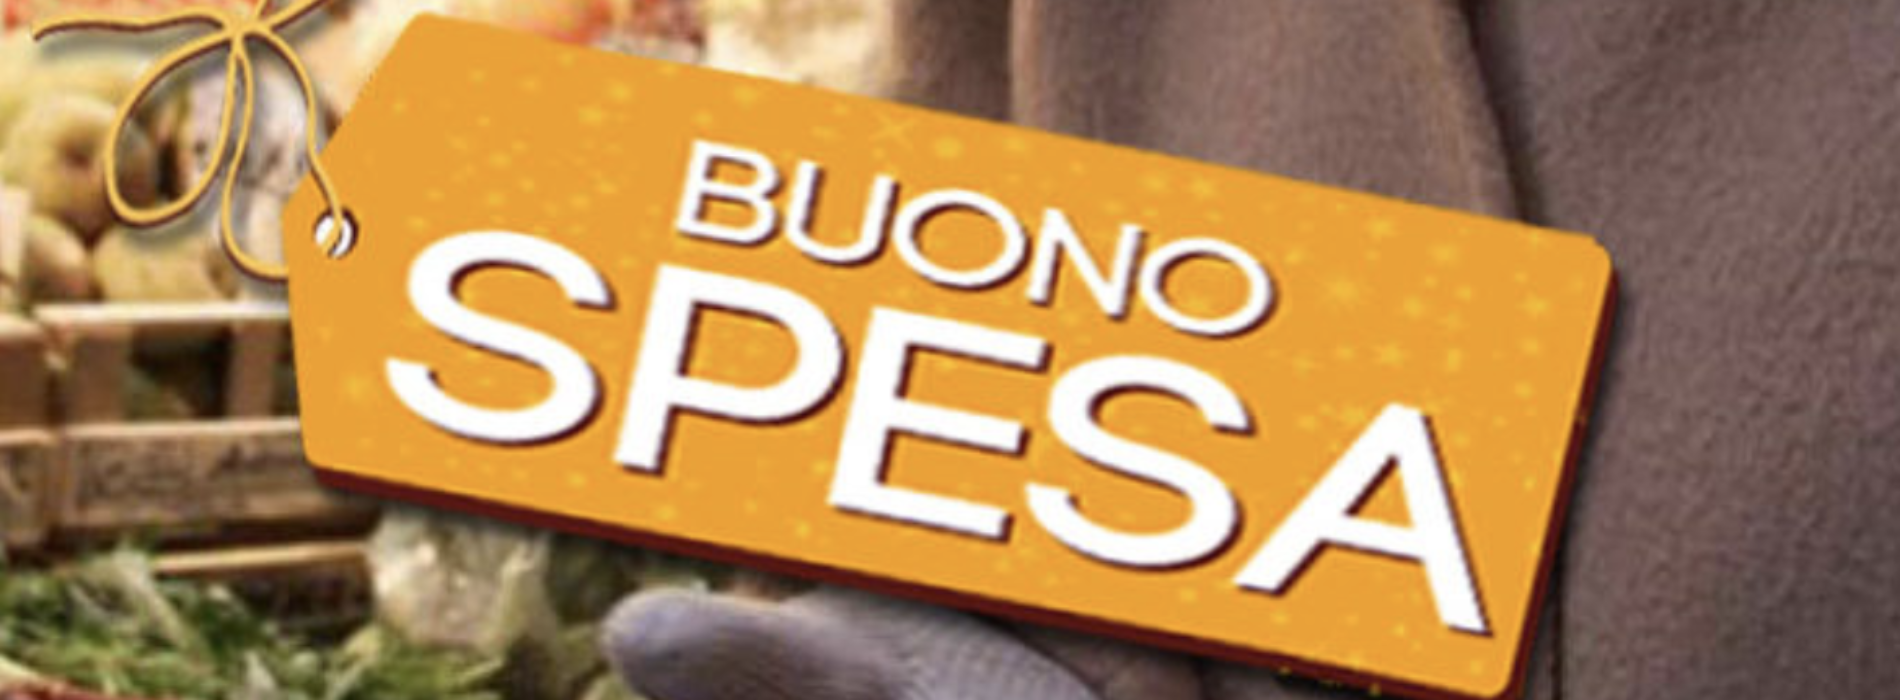 Buoni spesa Caserta, online lista dei 35 punti vendita aderenti